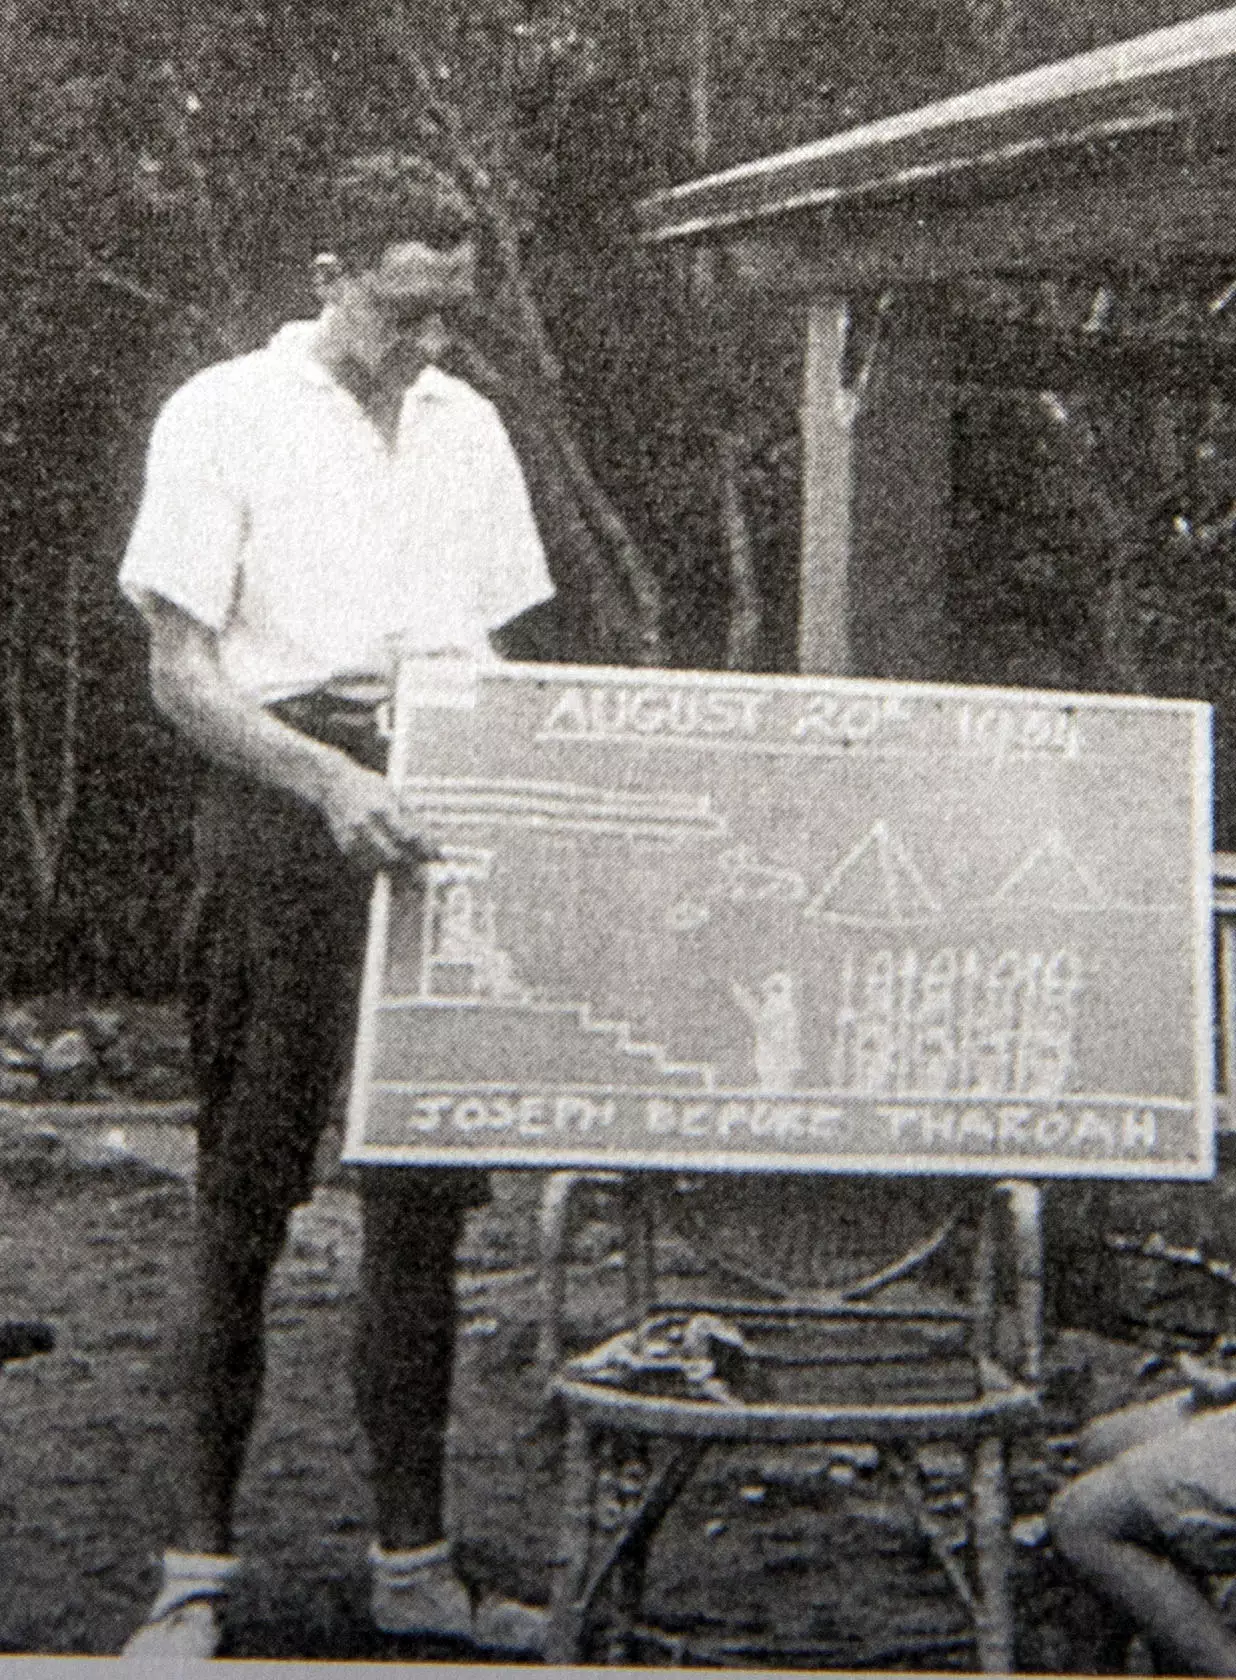 Bob teaching in Taiwan in 1934.